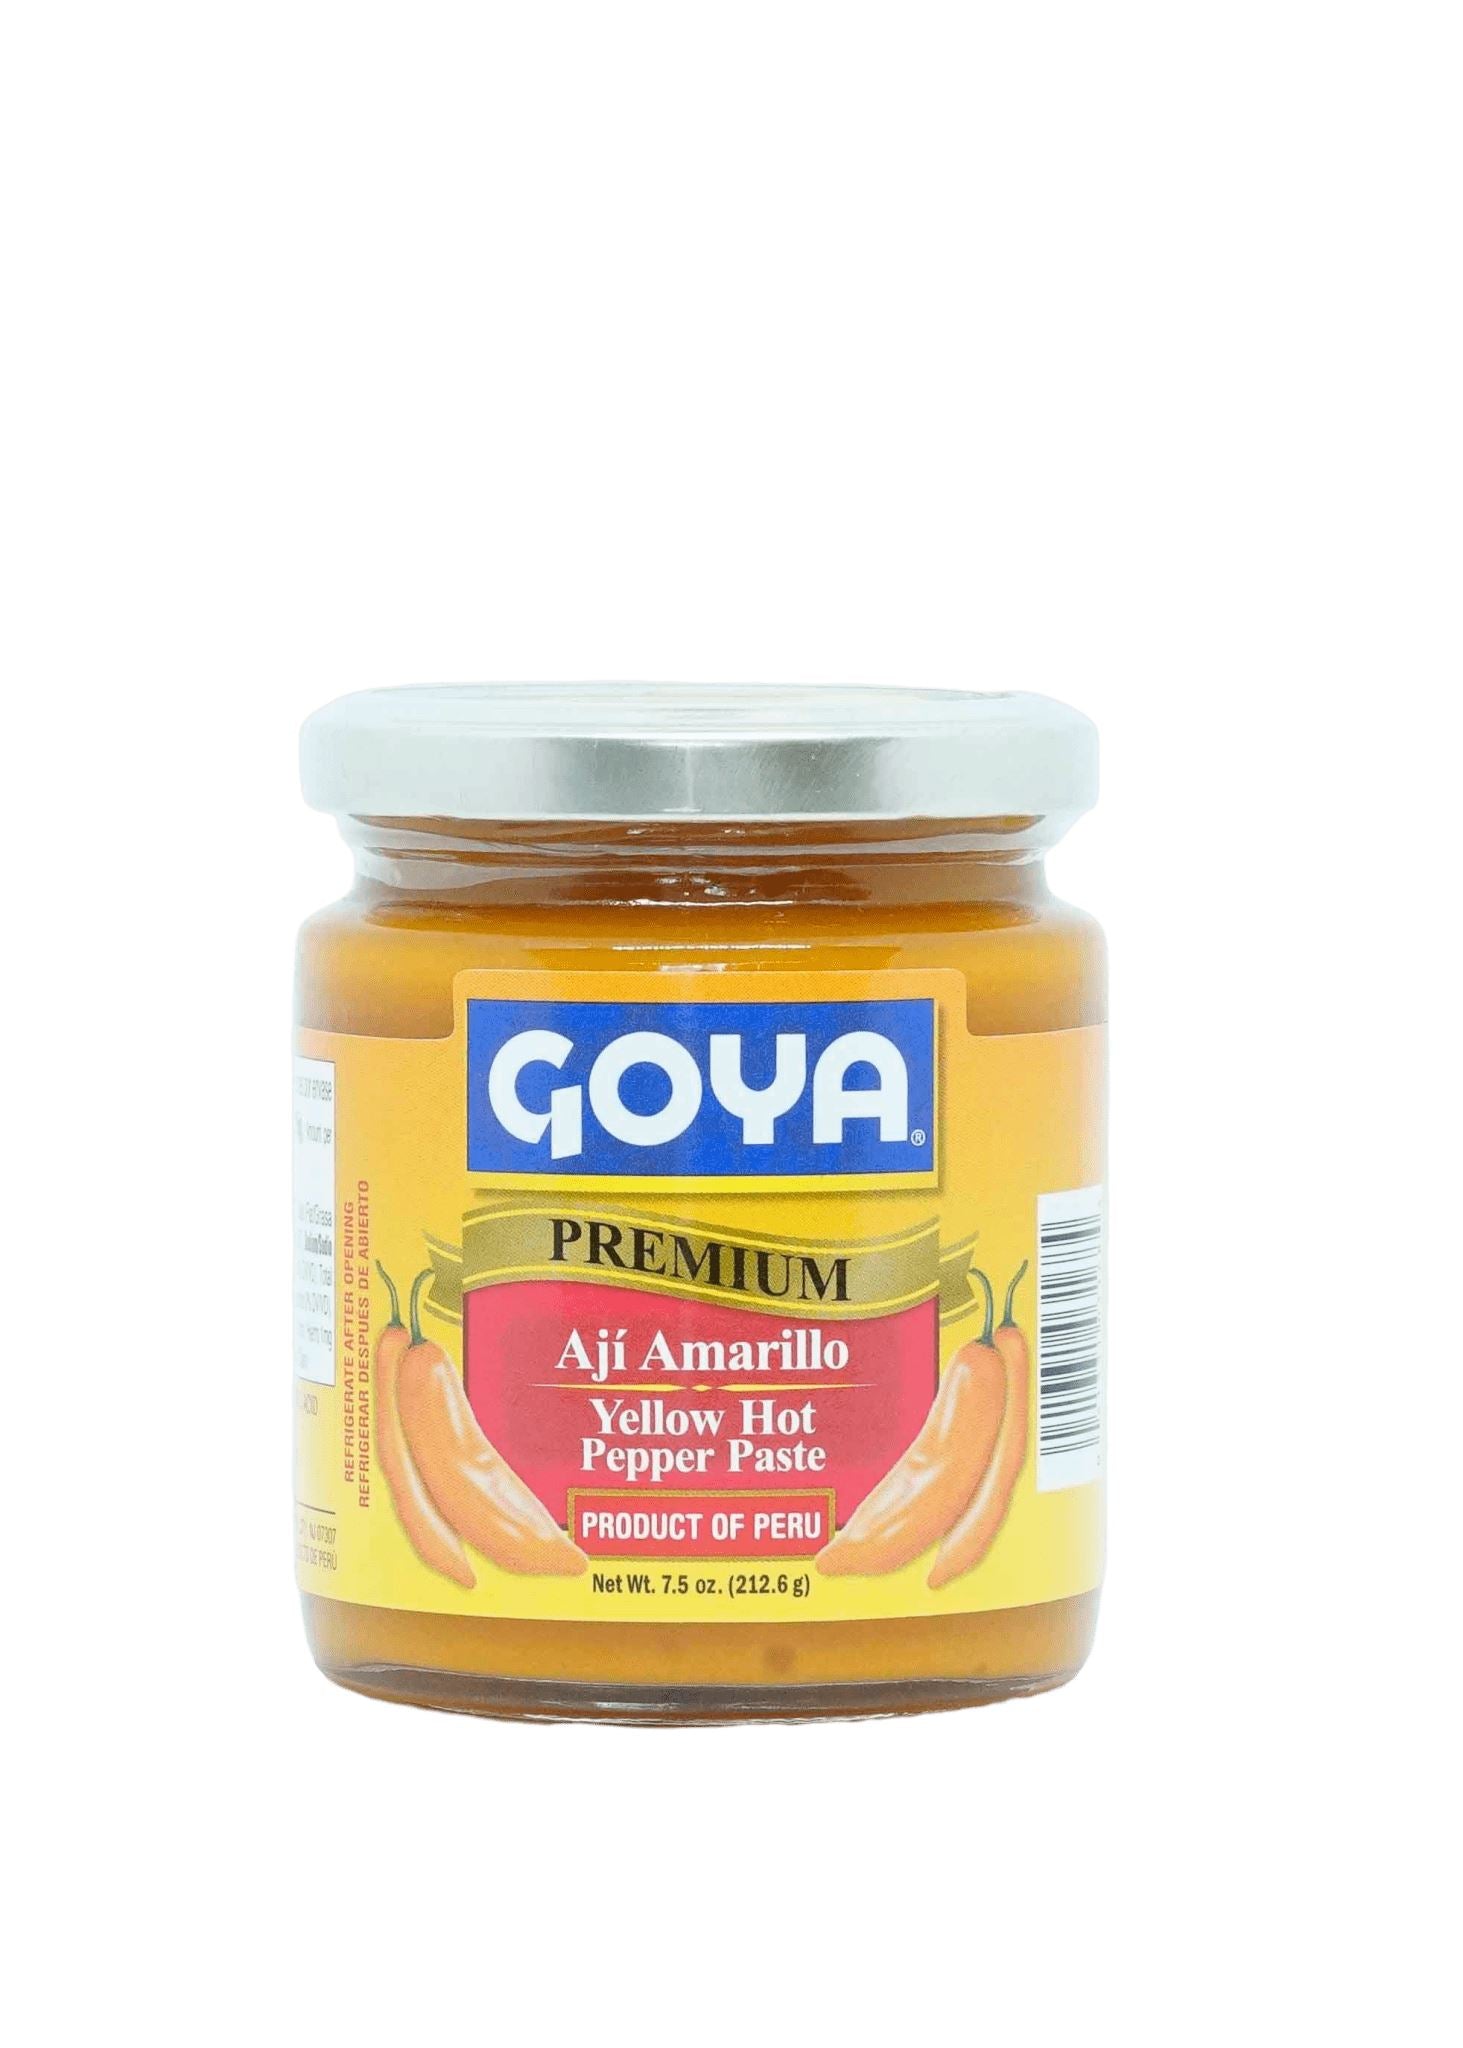 Goya Amarillo Pepper Paste 212g Chillies Goya 